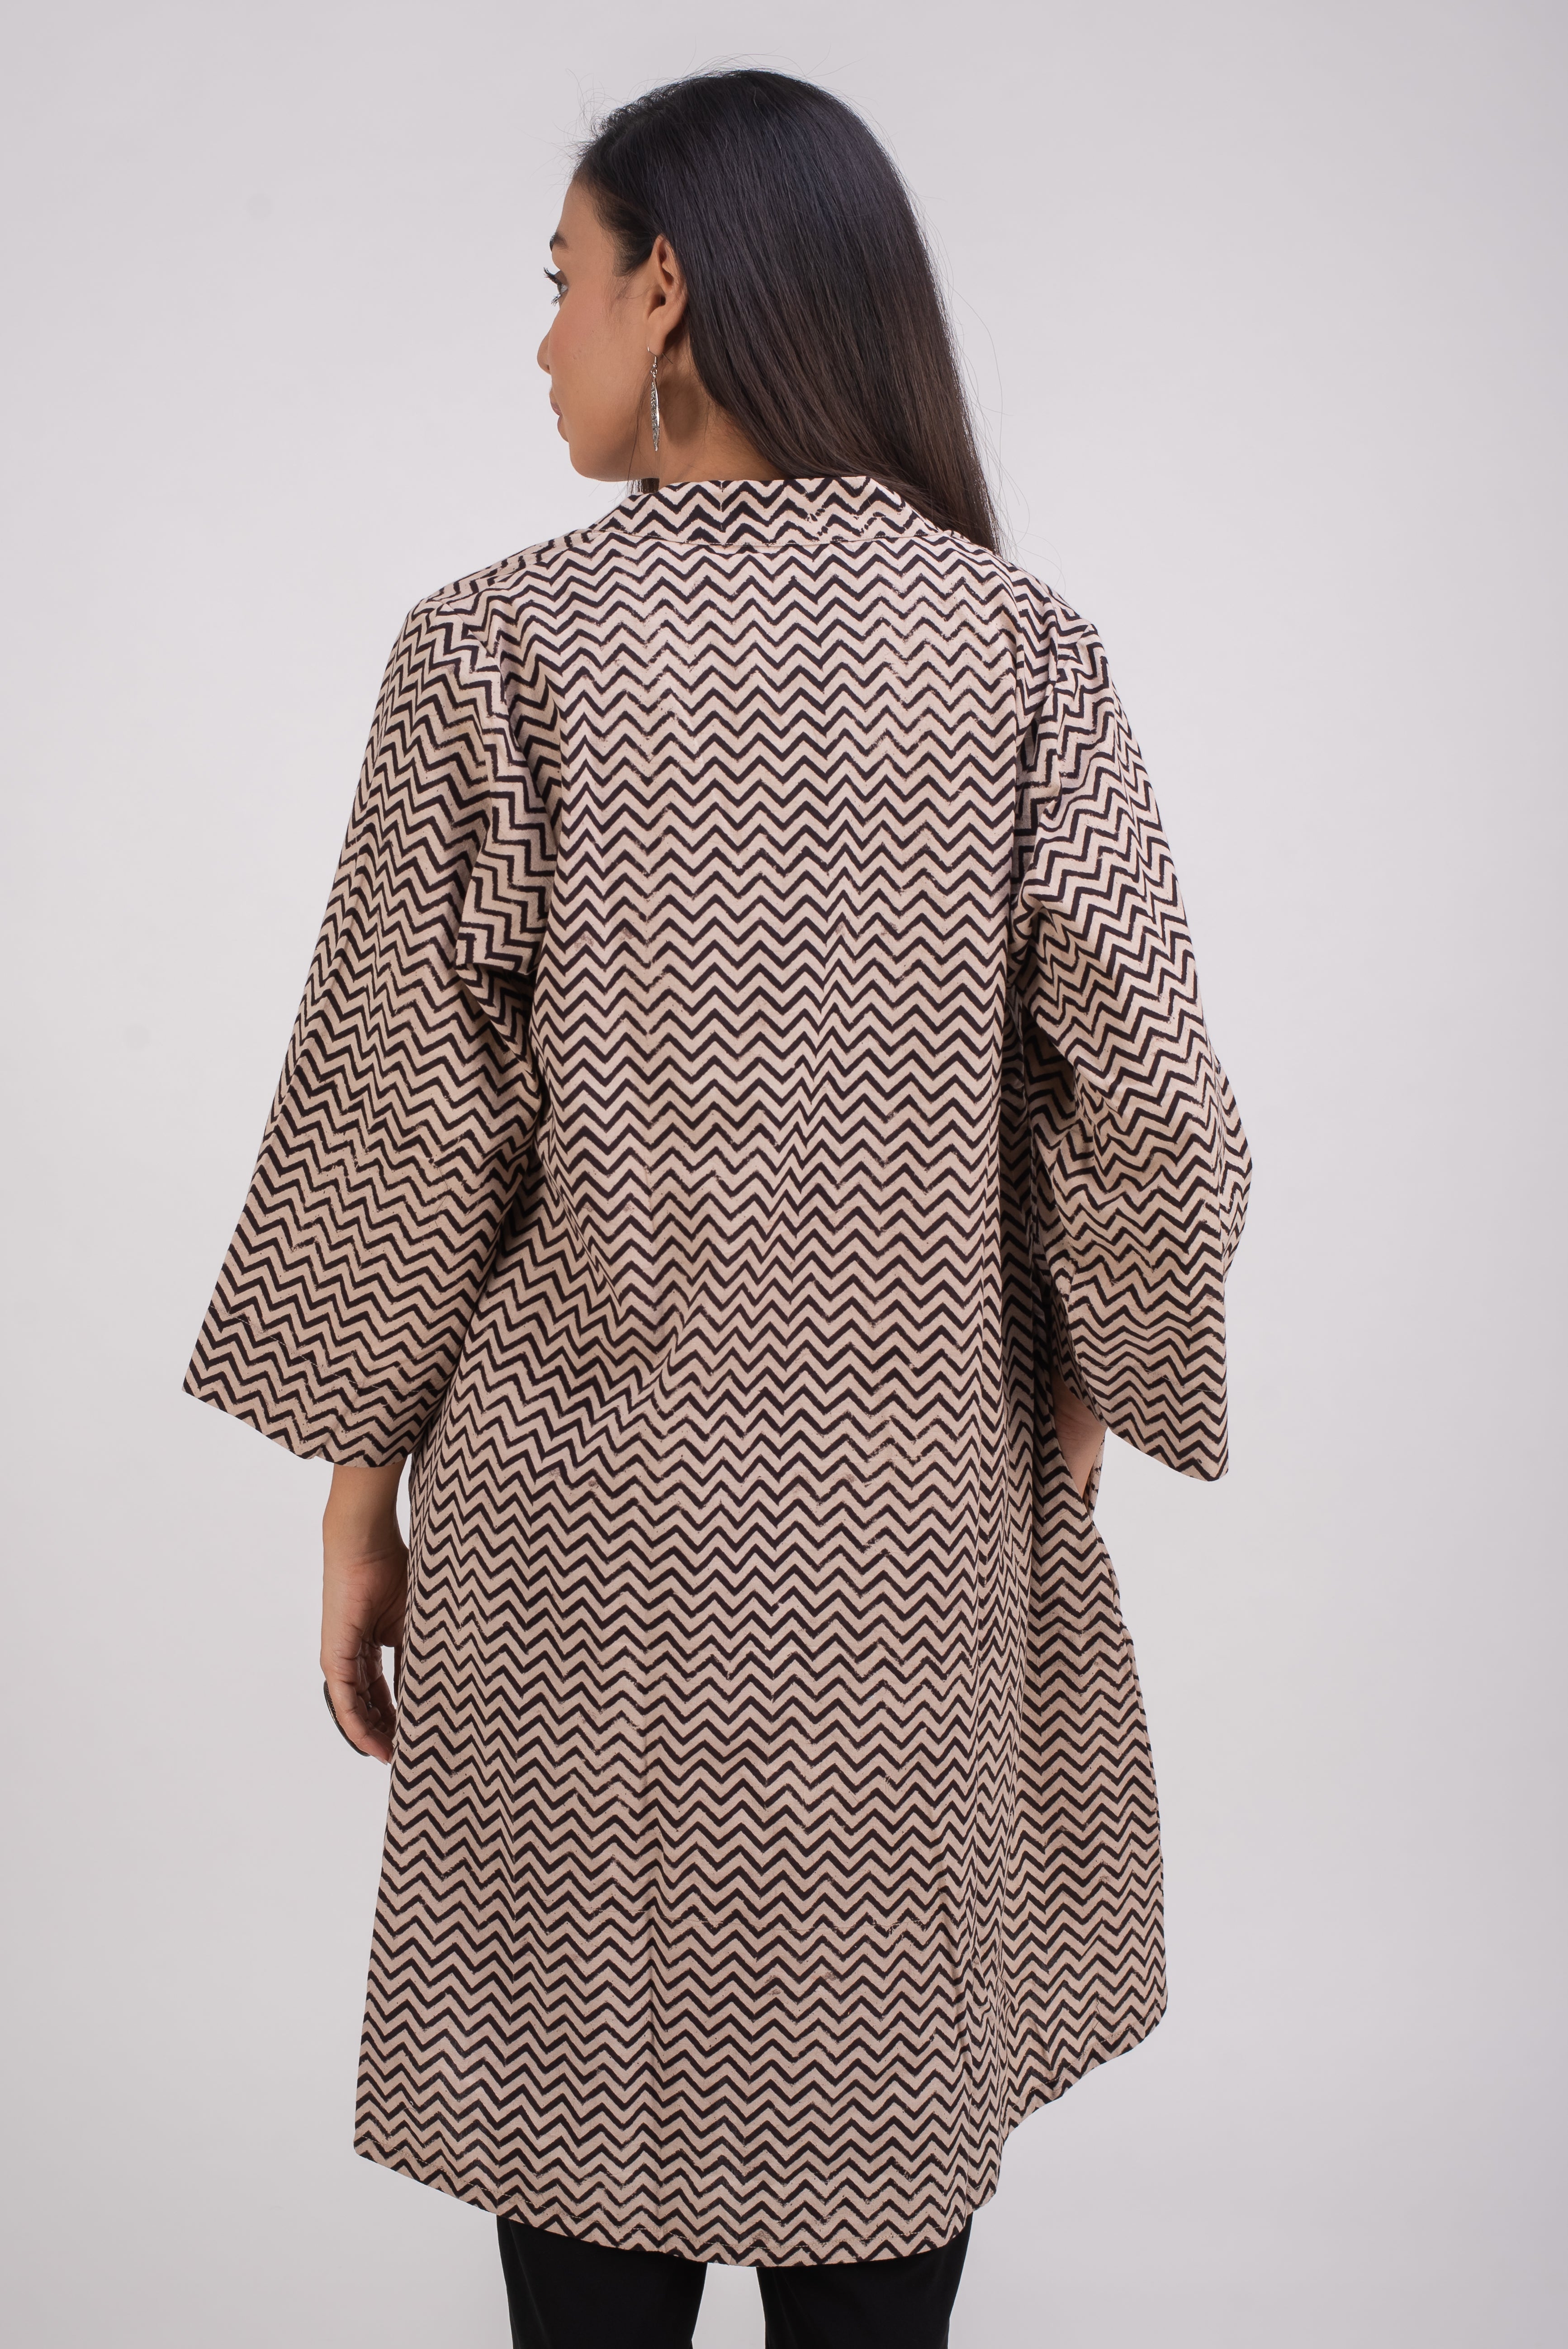 513- 110 Whitelotus "Kimono" Women's coat